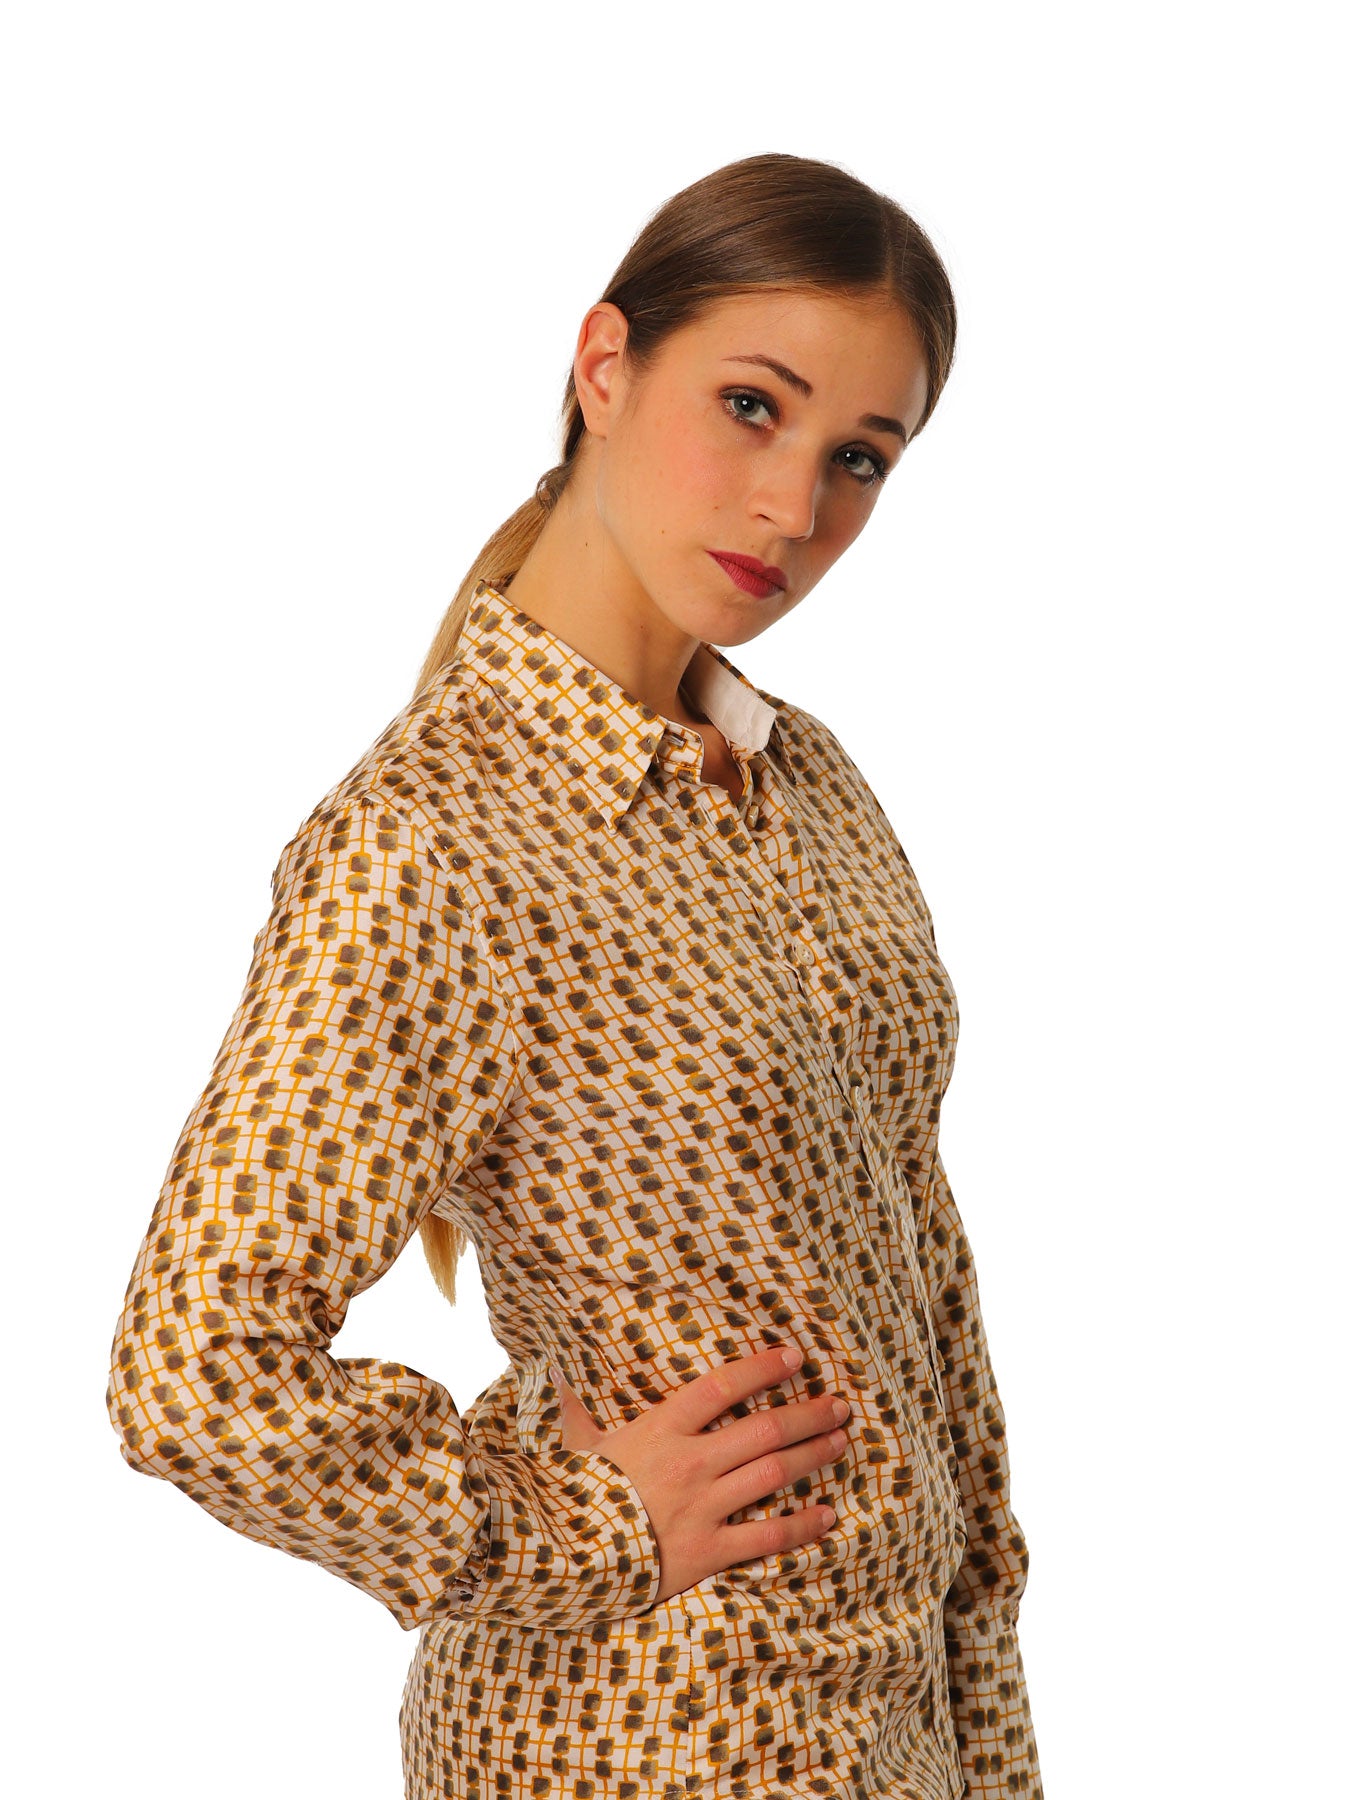 Women's shirts with geometric pattern